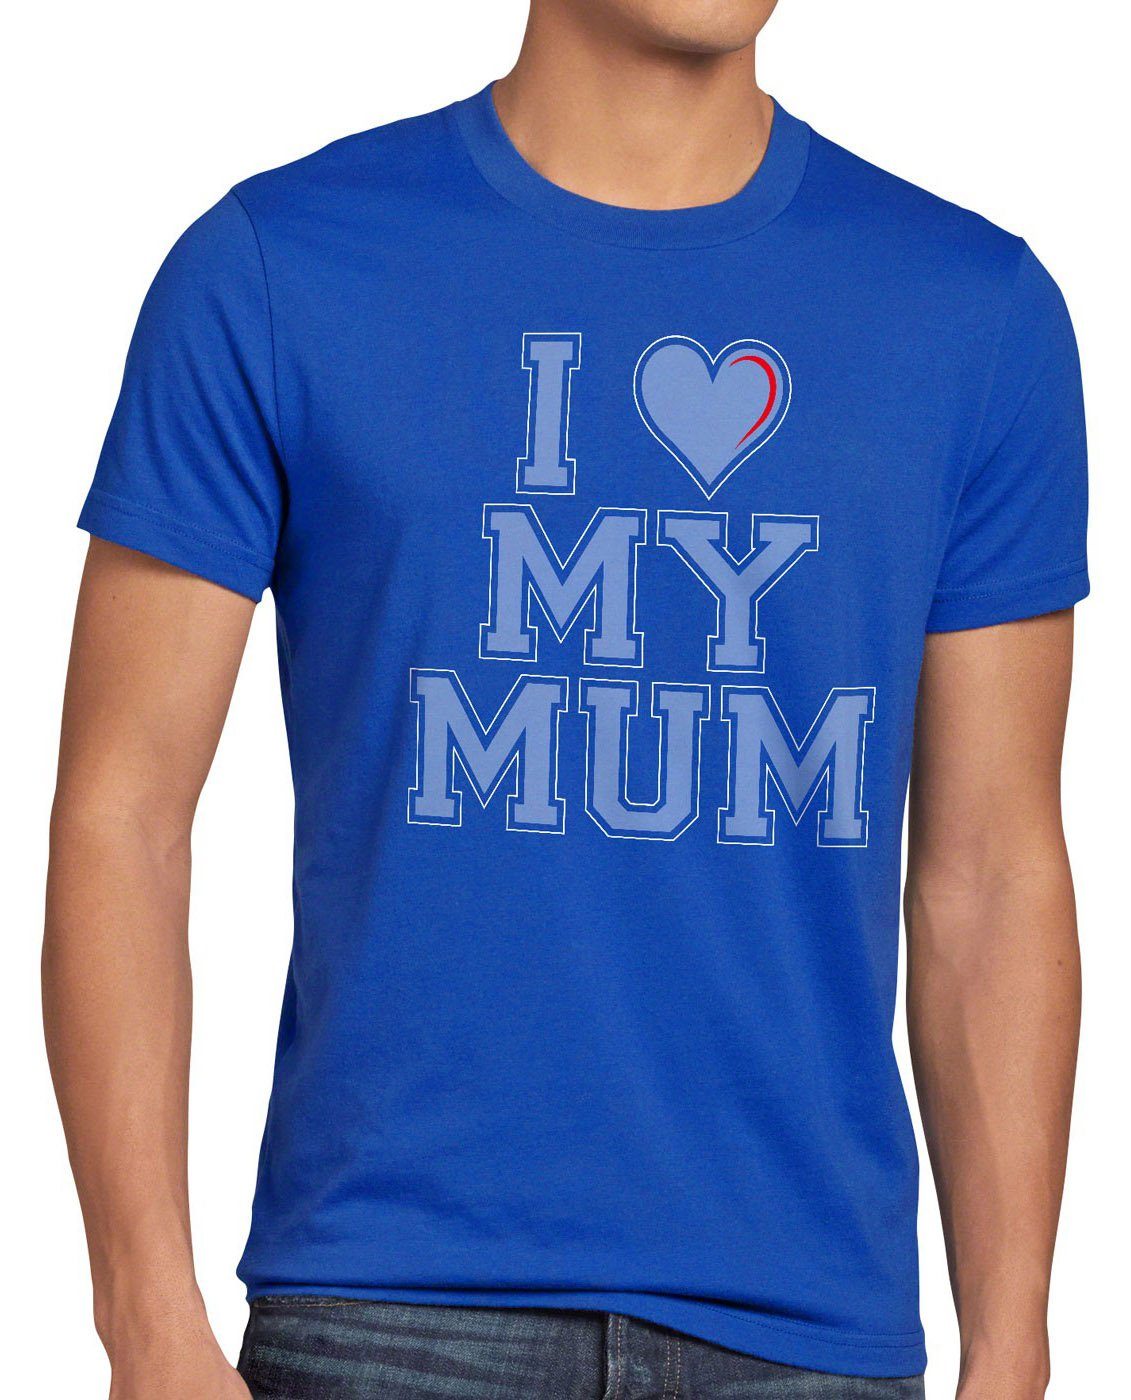 T-Shirt mutter I mama york Print-Shirt Herren Mum style3 liebe geburtstag new love blau oma my muttertag